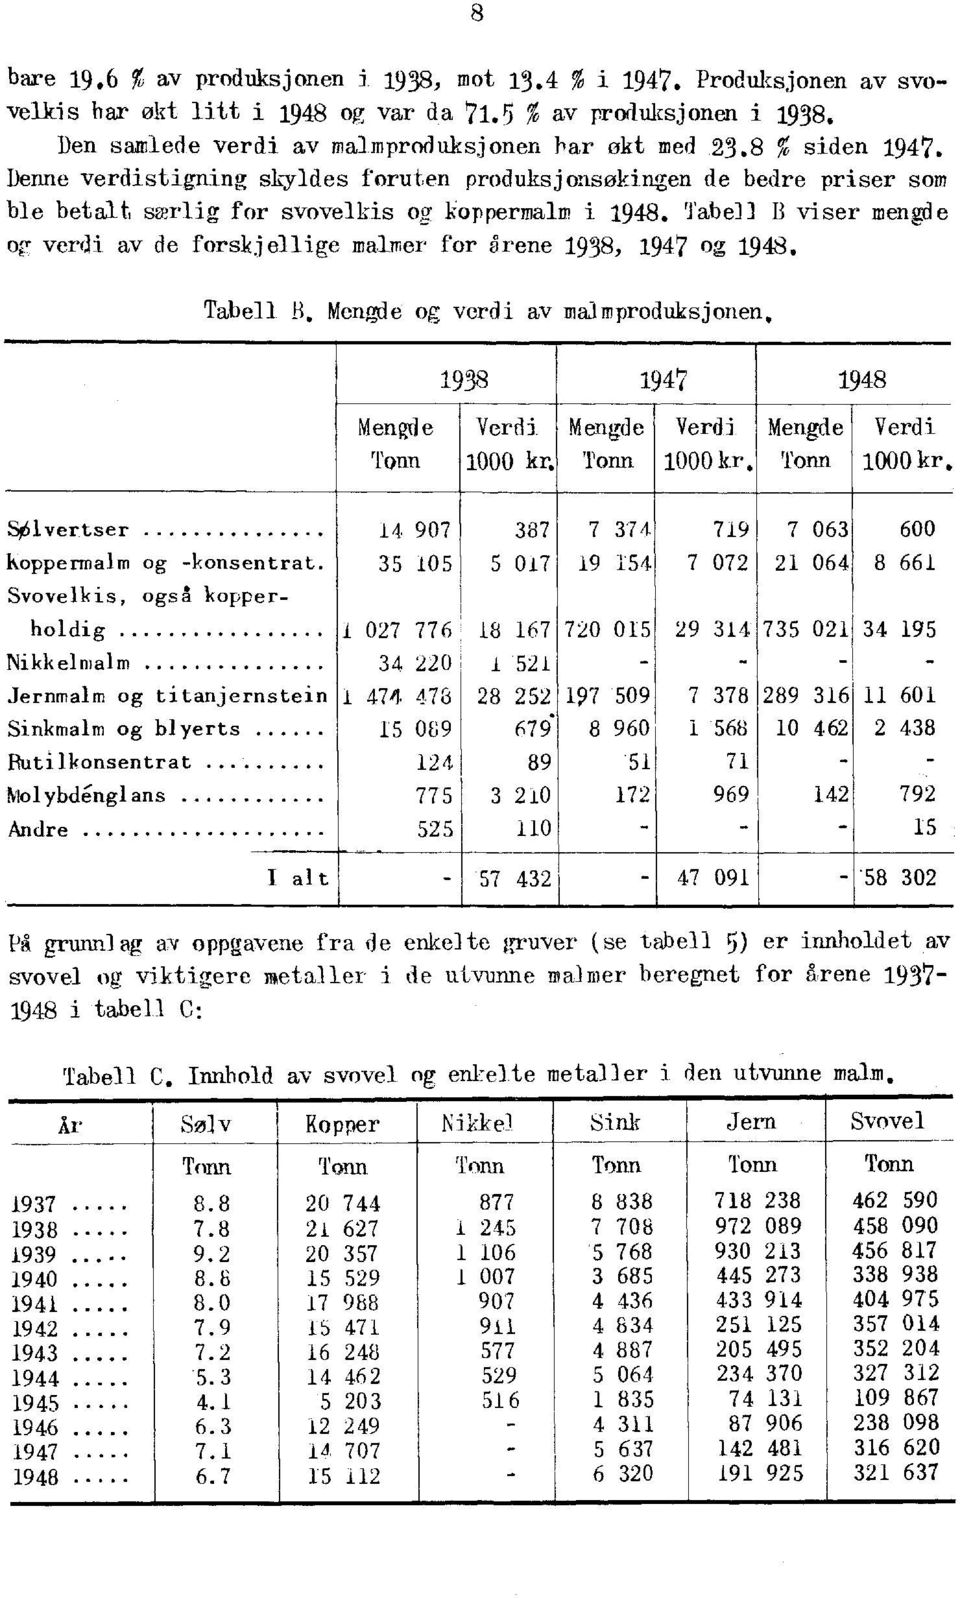 Tabell B viser mengde or verdi av de forskjellige malmer for drene 1938, 1947 og 1948. Tabell B. Mengde og verdi av malmproduksjonen. Mengde Tonn 1938 1947 1948 Verdi 1000 kr.